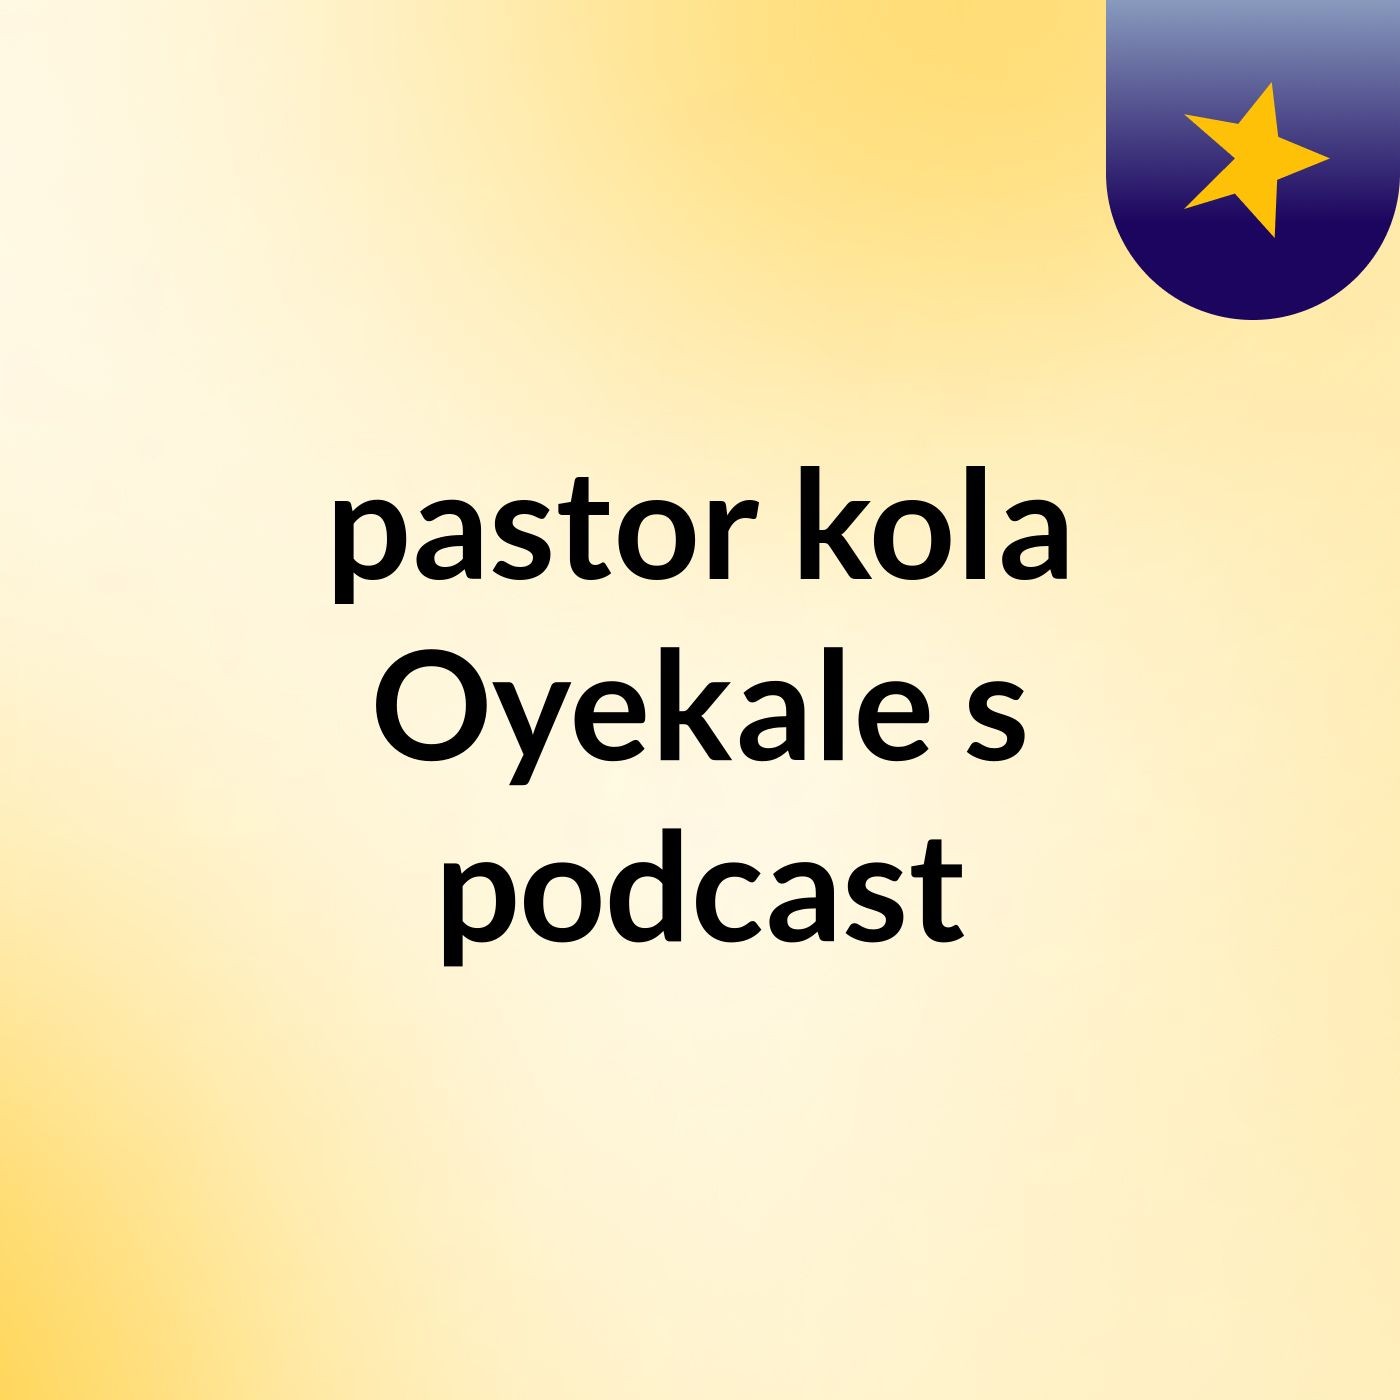 pastor kola Oyekale's podcast